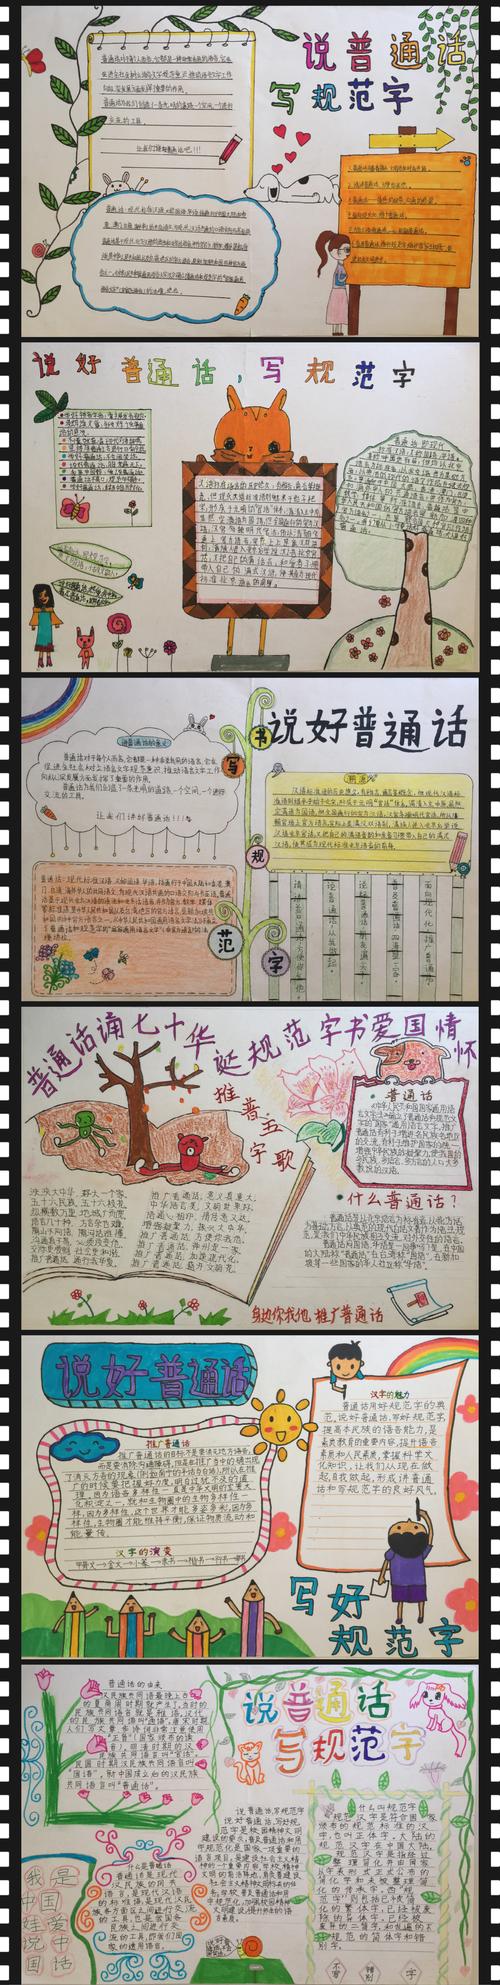 情怀小学生手抄报比赛 写美篇      为了丰富广大学生的校园文化生活